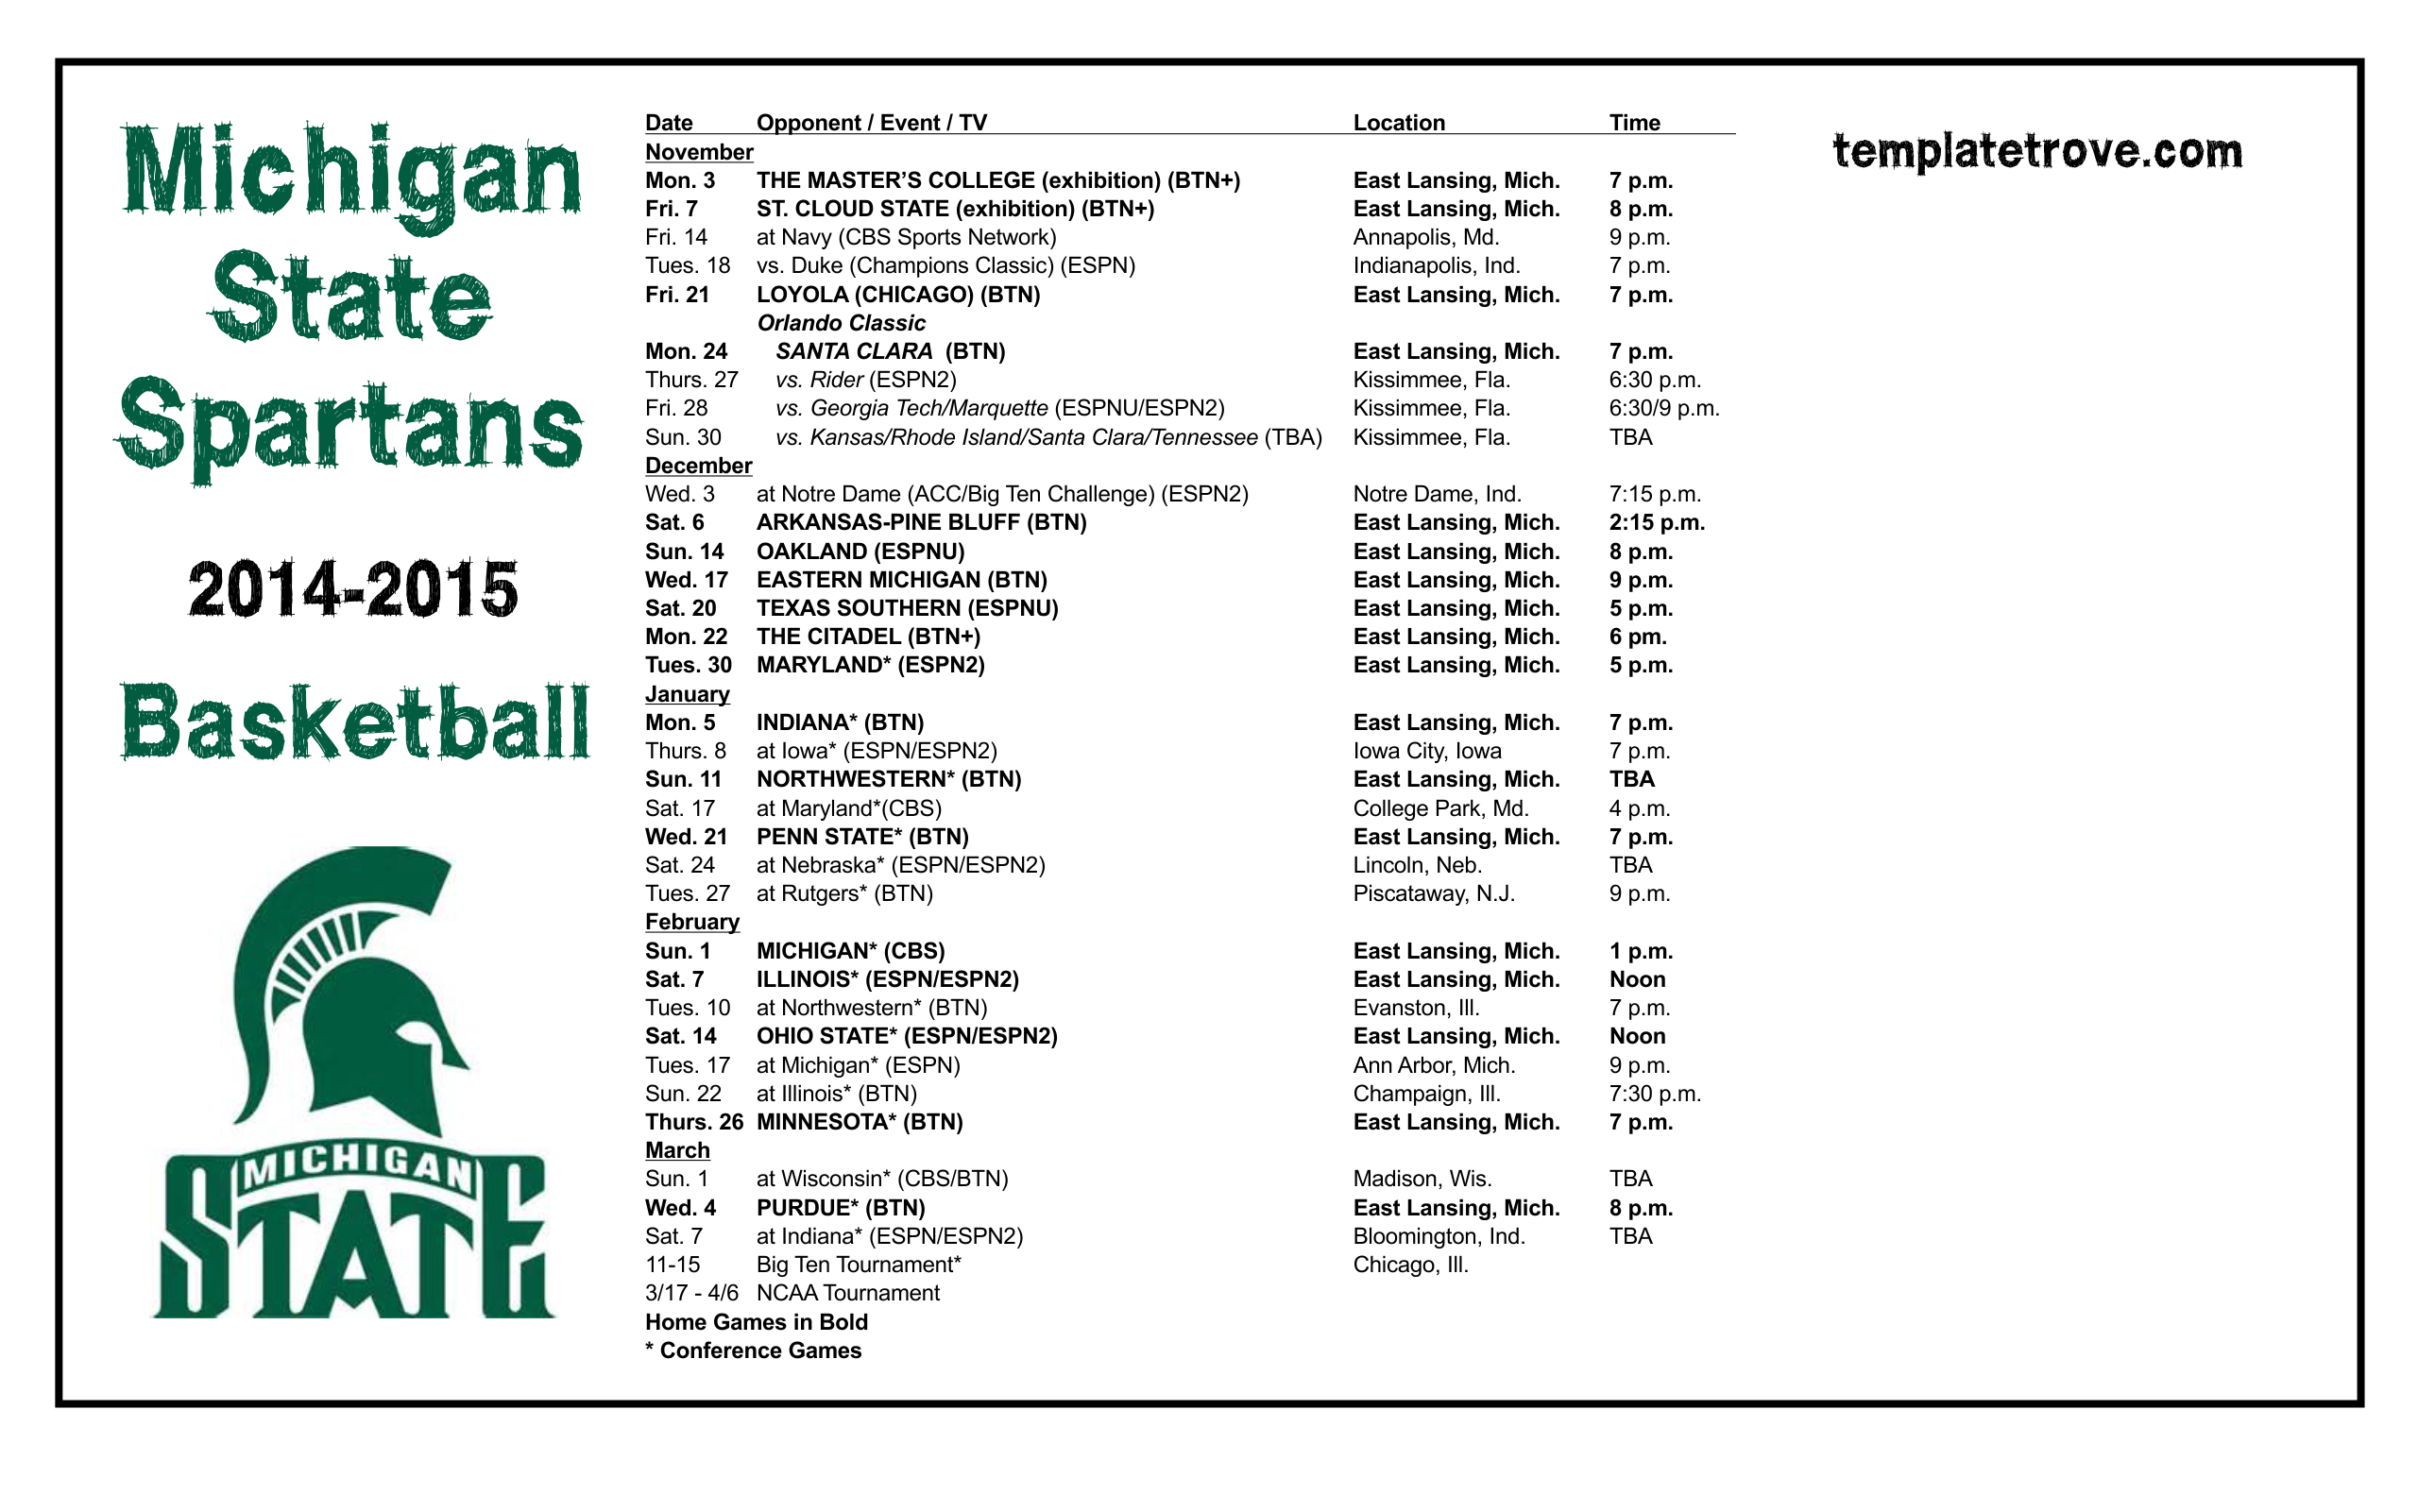 Sdsu Schedule Basketball 2014 2015 2015 Calendar Printable